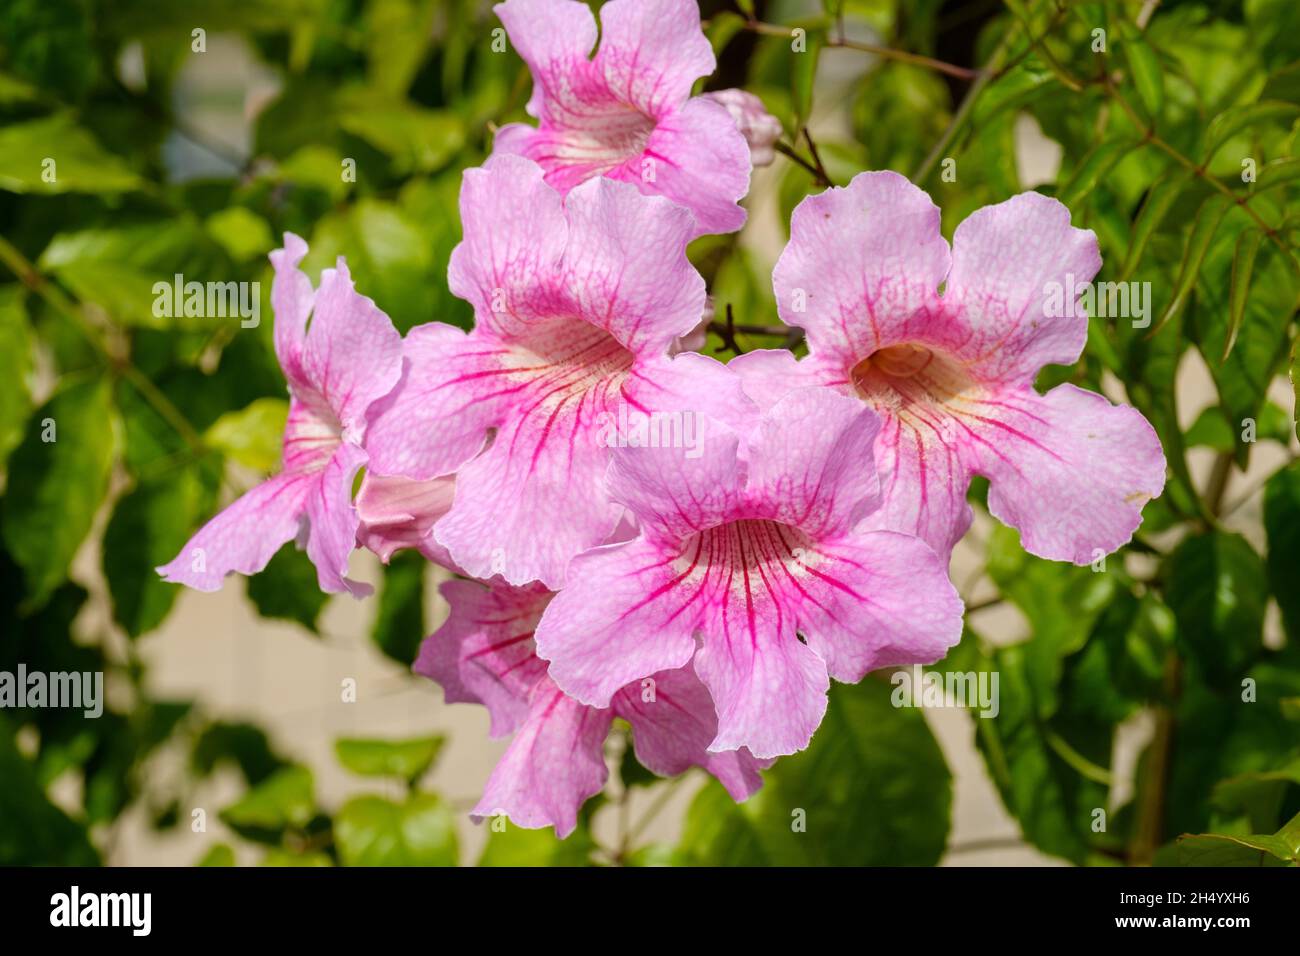 Gros plan de la trompette rose cultivée dans le jardin Photo Stock - Alamy